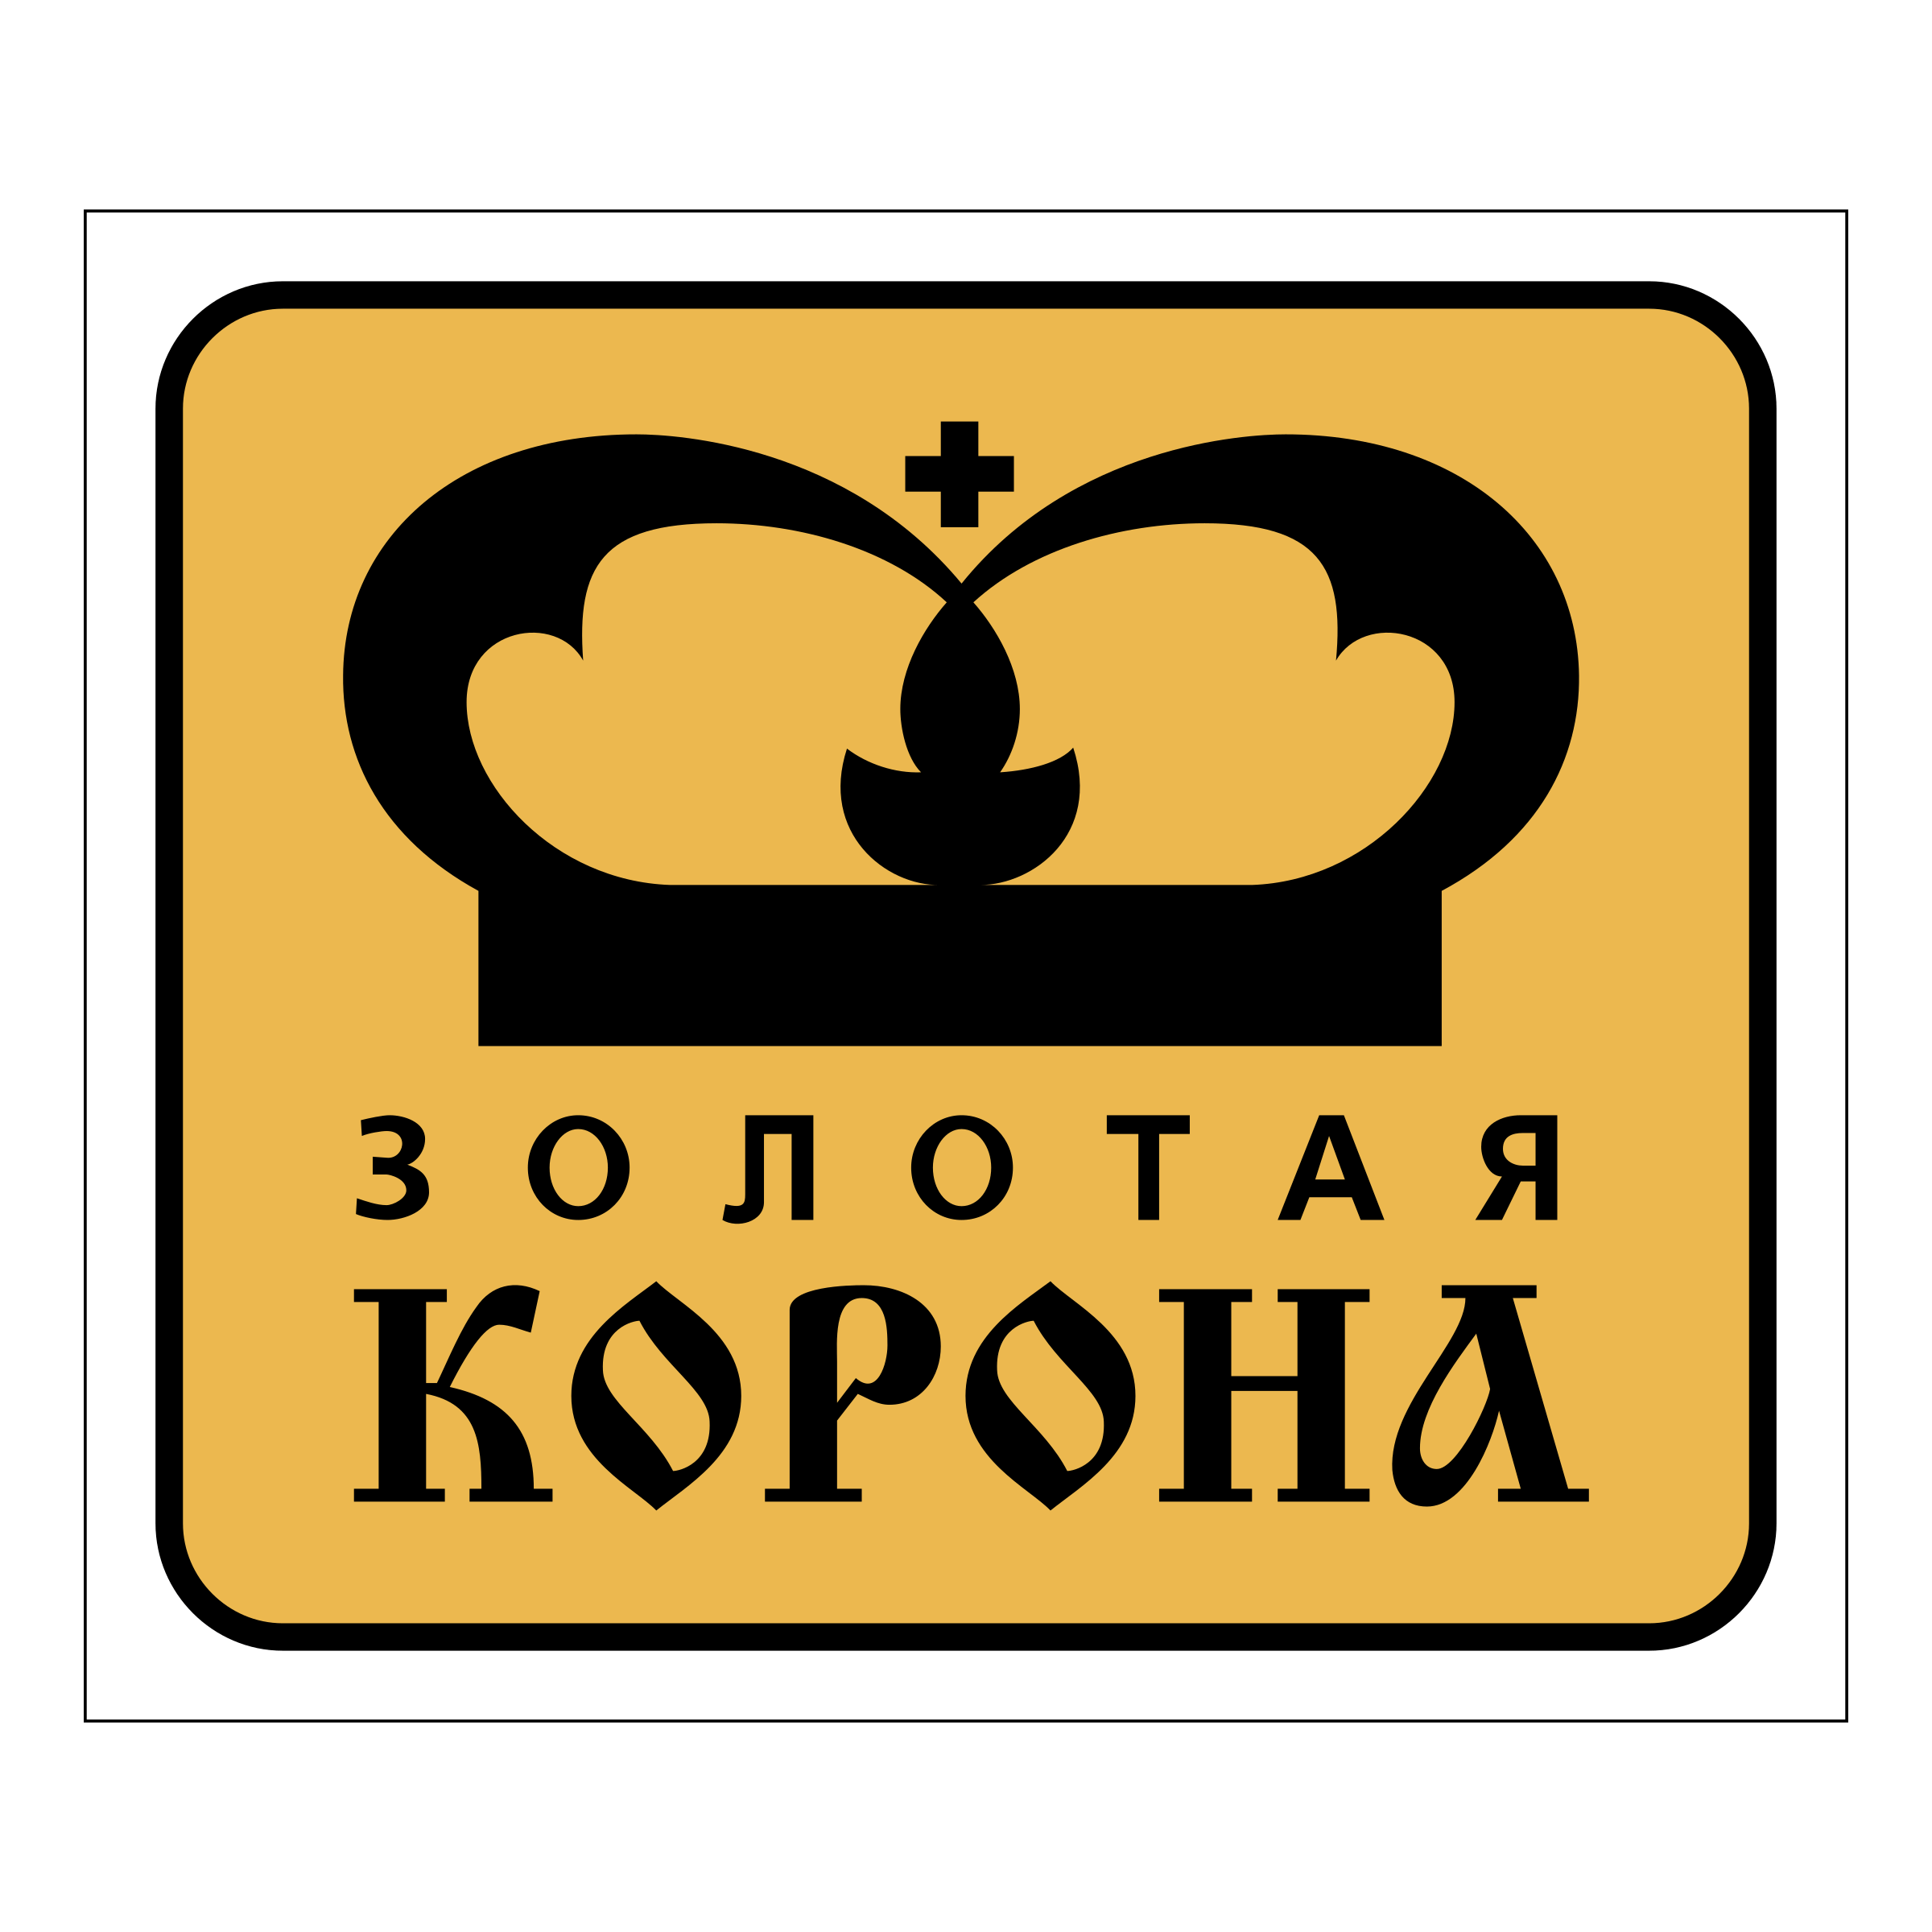 Yellow Gold Crown Logo Logodix